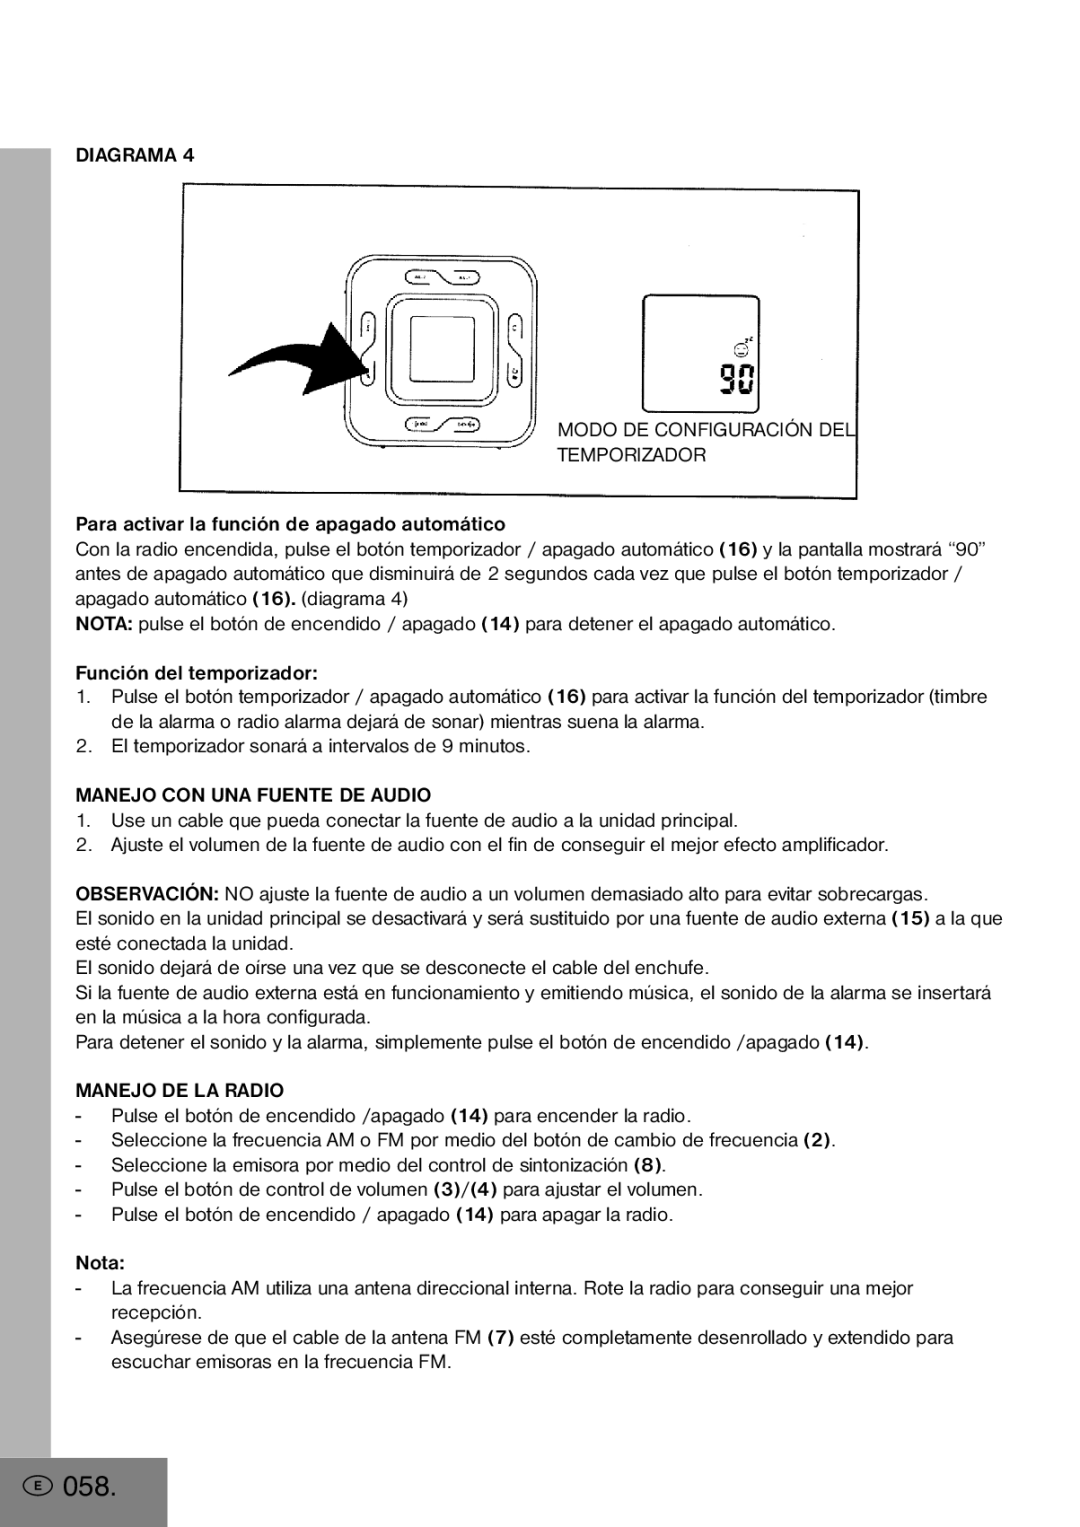 Elta 4556 manual 058, Diagrama Modo DE Configuración DEL Temporizador, Manejo CON UNA Fuente DE Audio, Manejo DE LA Radio 